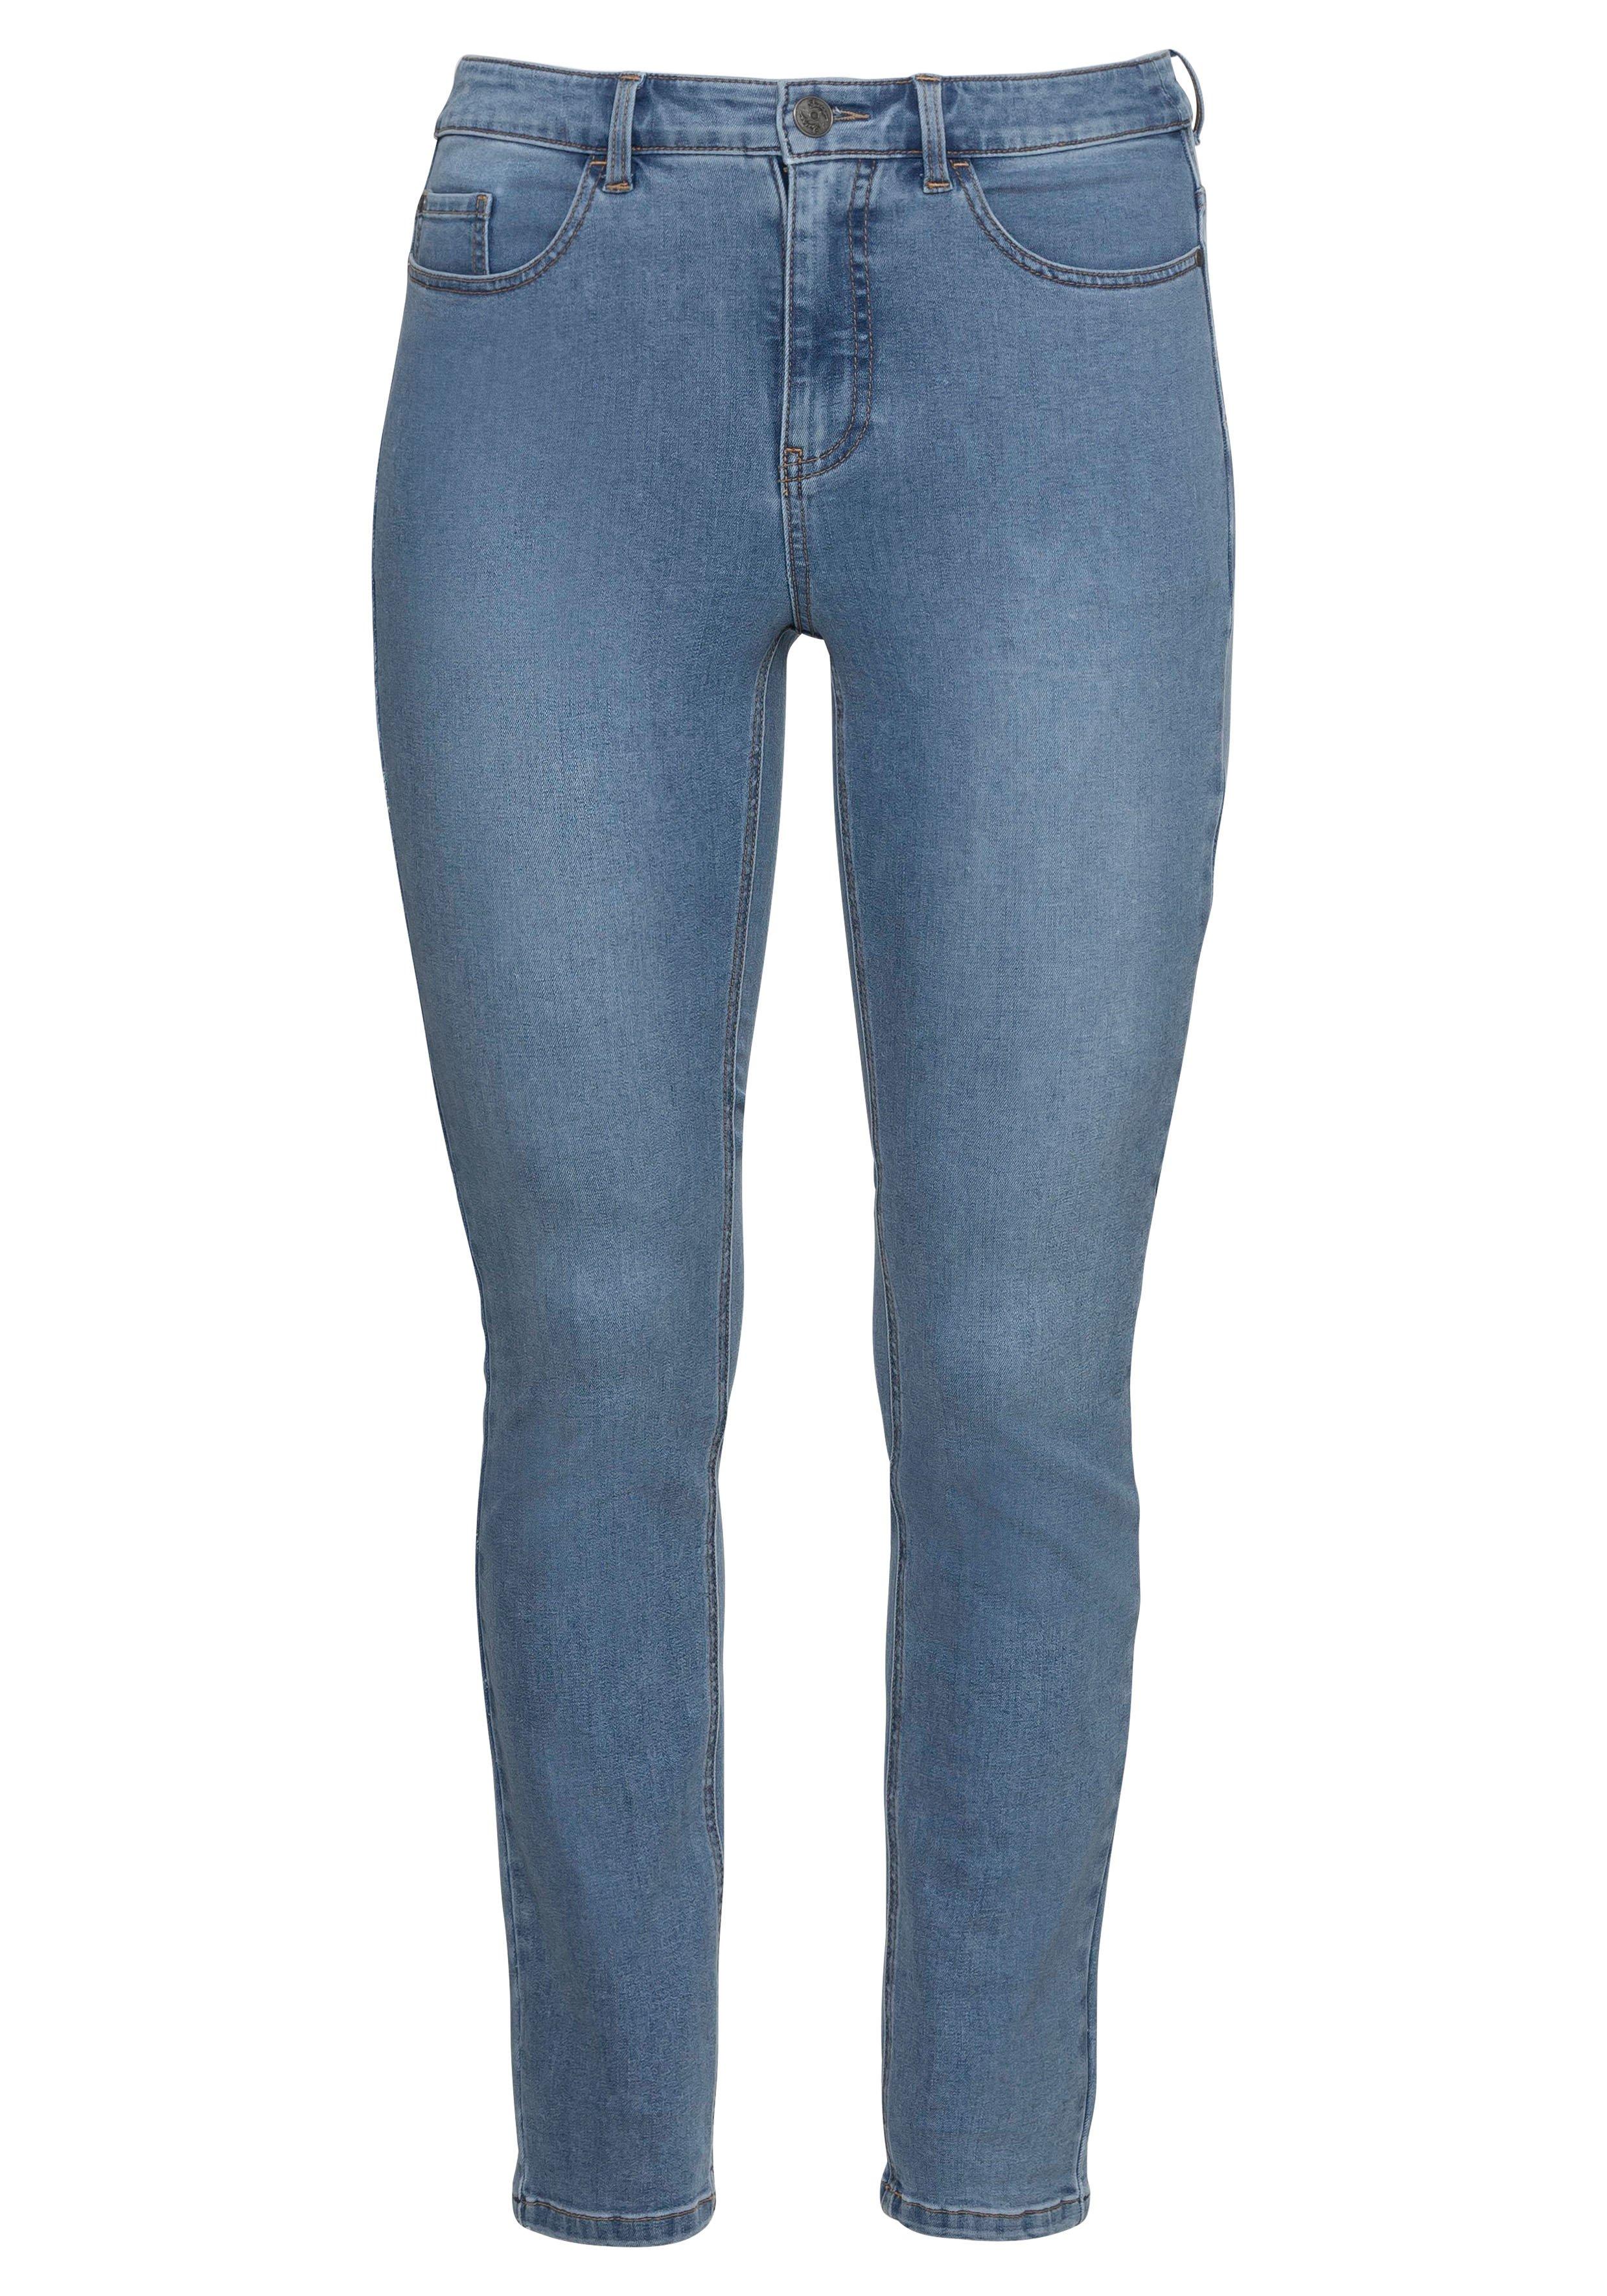 Skinny Power-Stretch-Jeans sheego | blue dark in 5-Pocket-Form - Denim